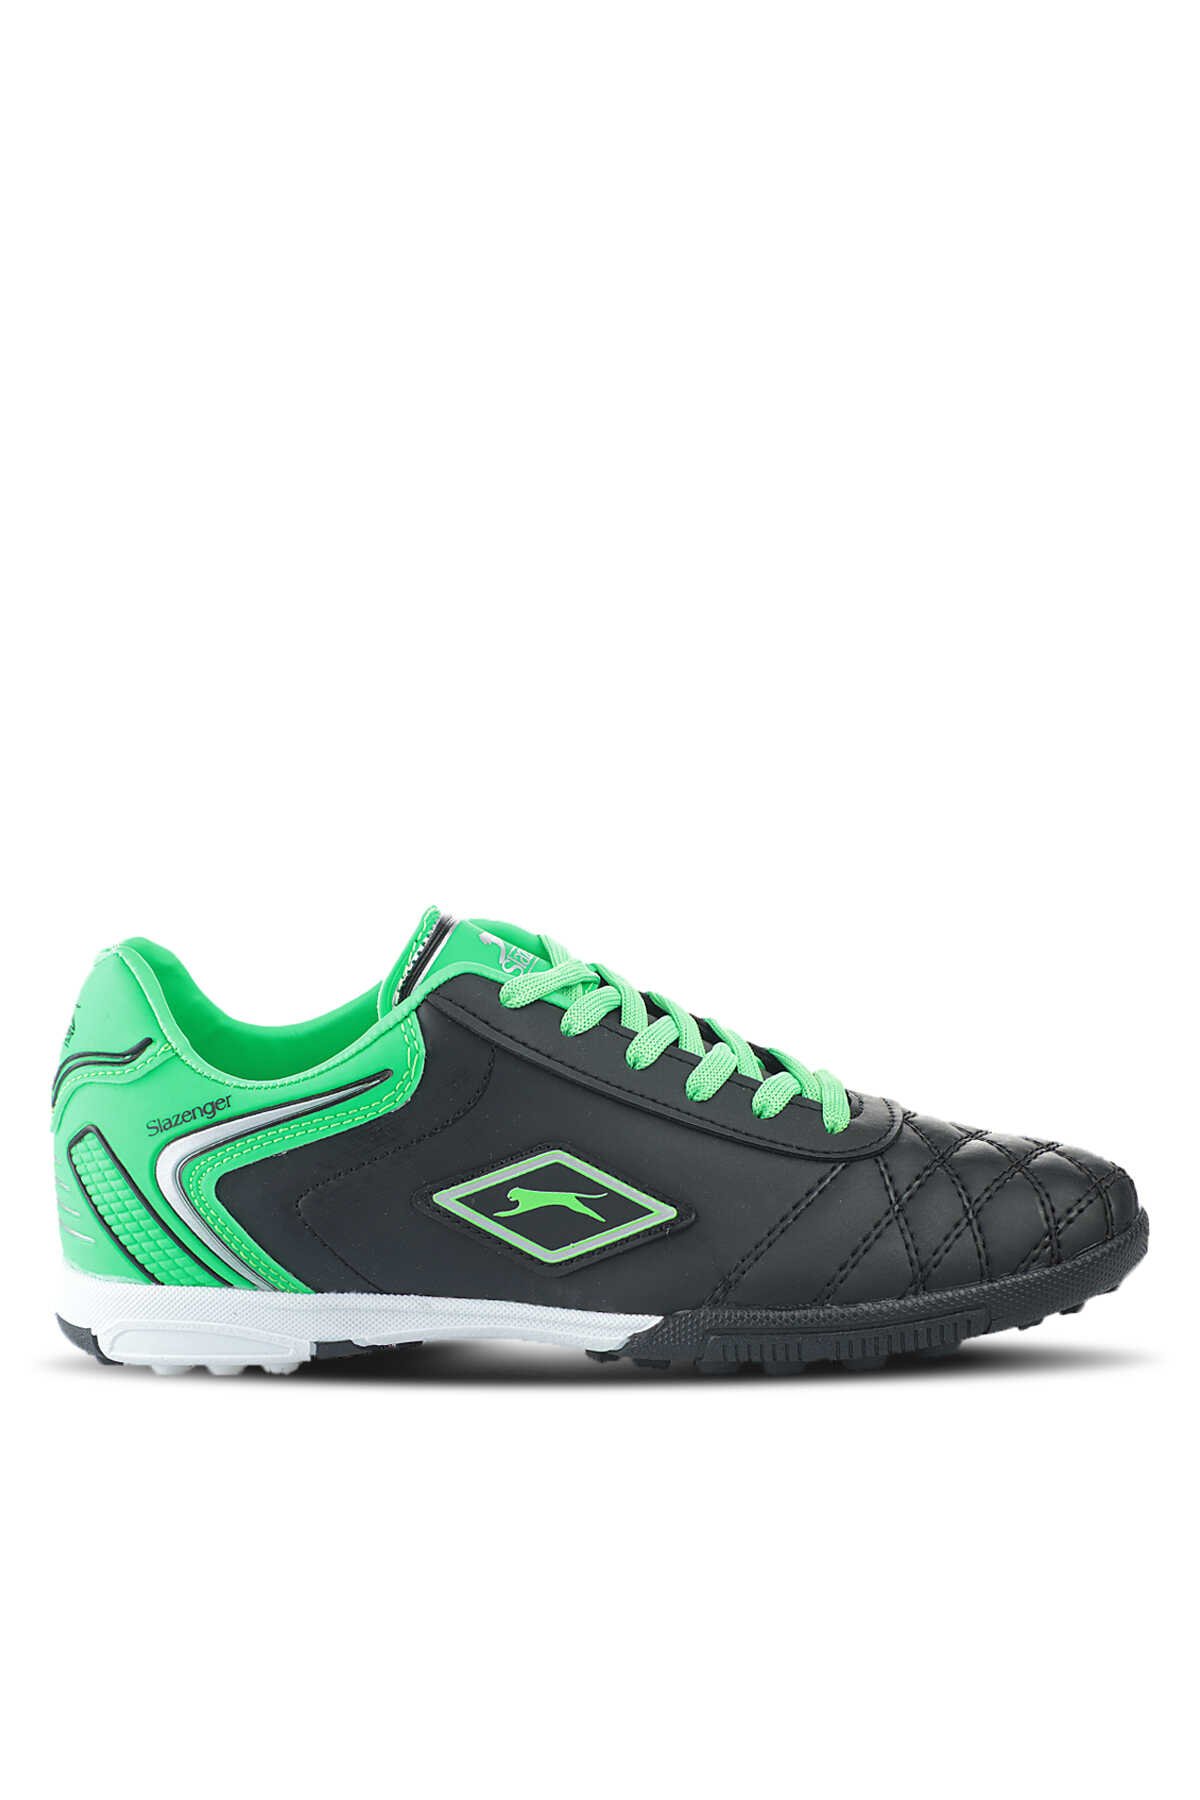 Slazenger - Slazenger HUGO HS Futbol Erkek Halı Saha Ayakkabı Siyah / Yeşil